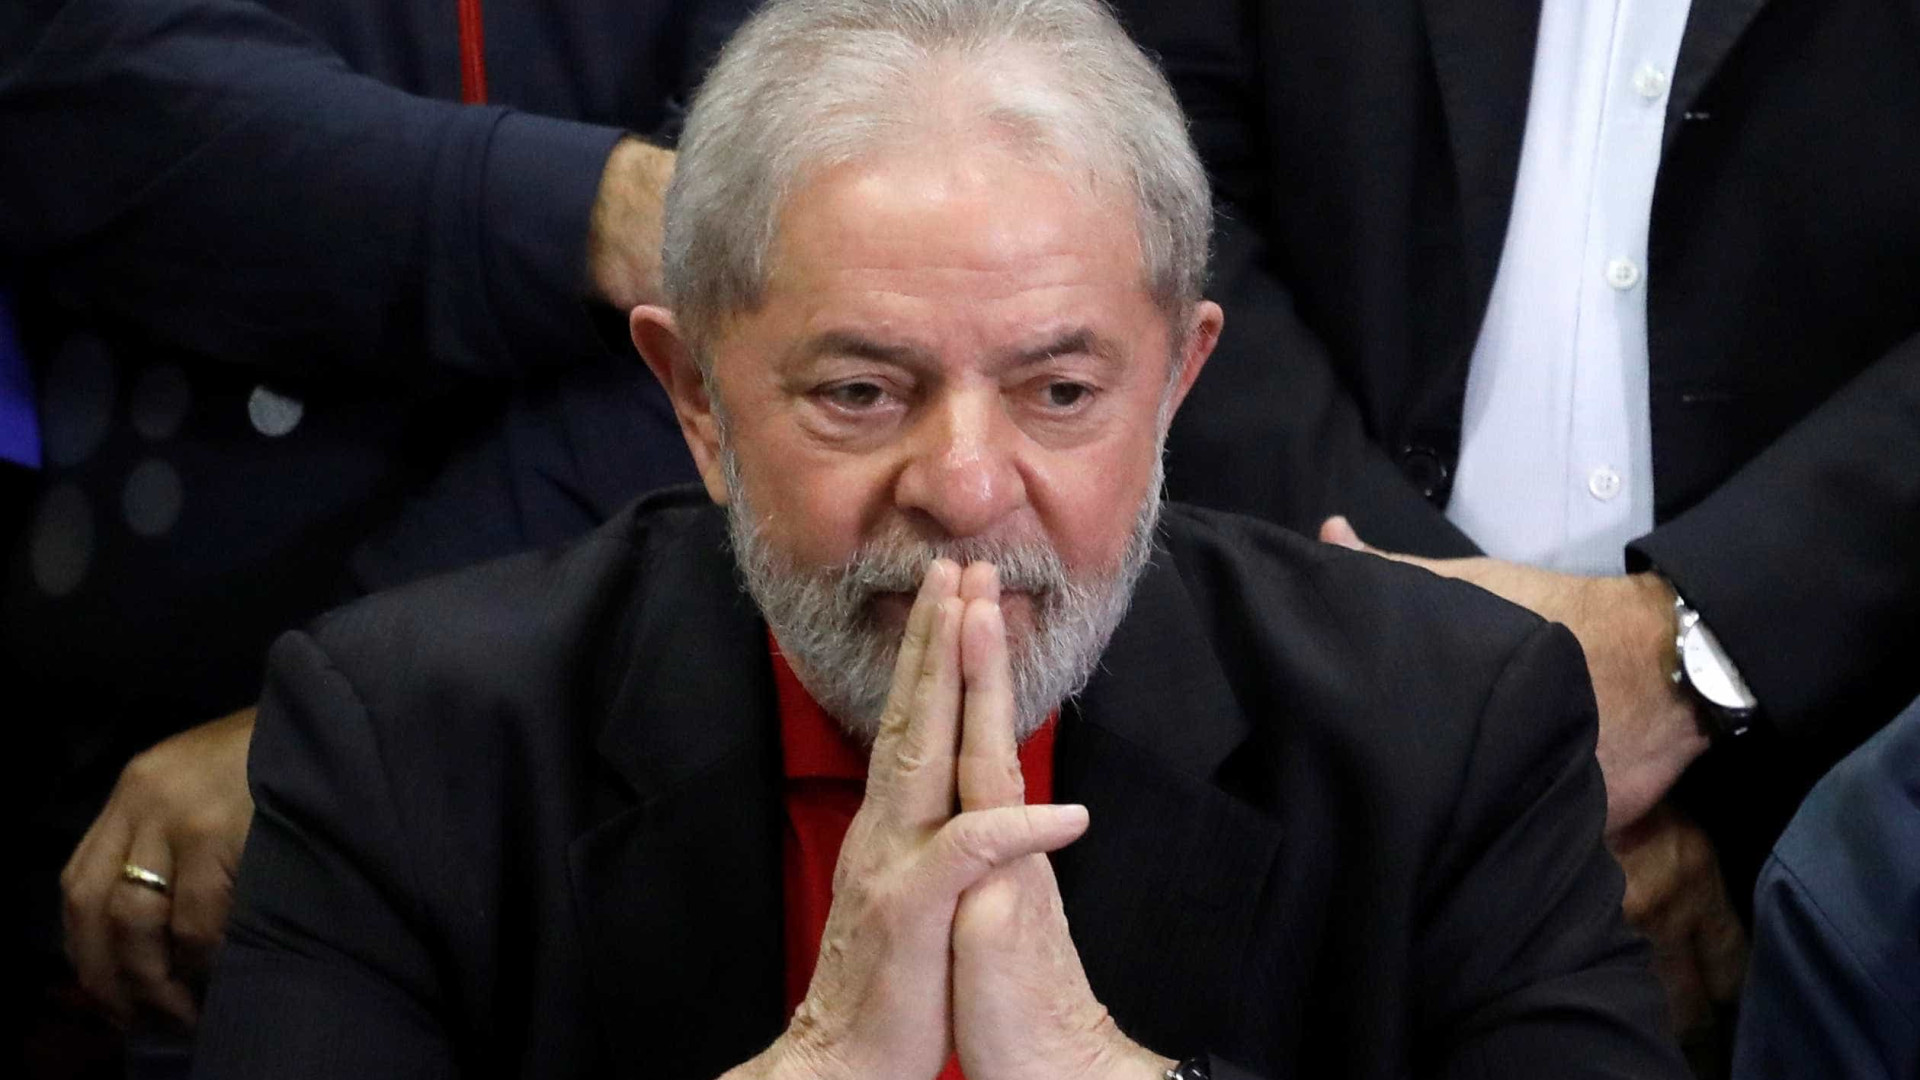 RS quer fechar prédios públicos para julgamento de Lula